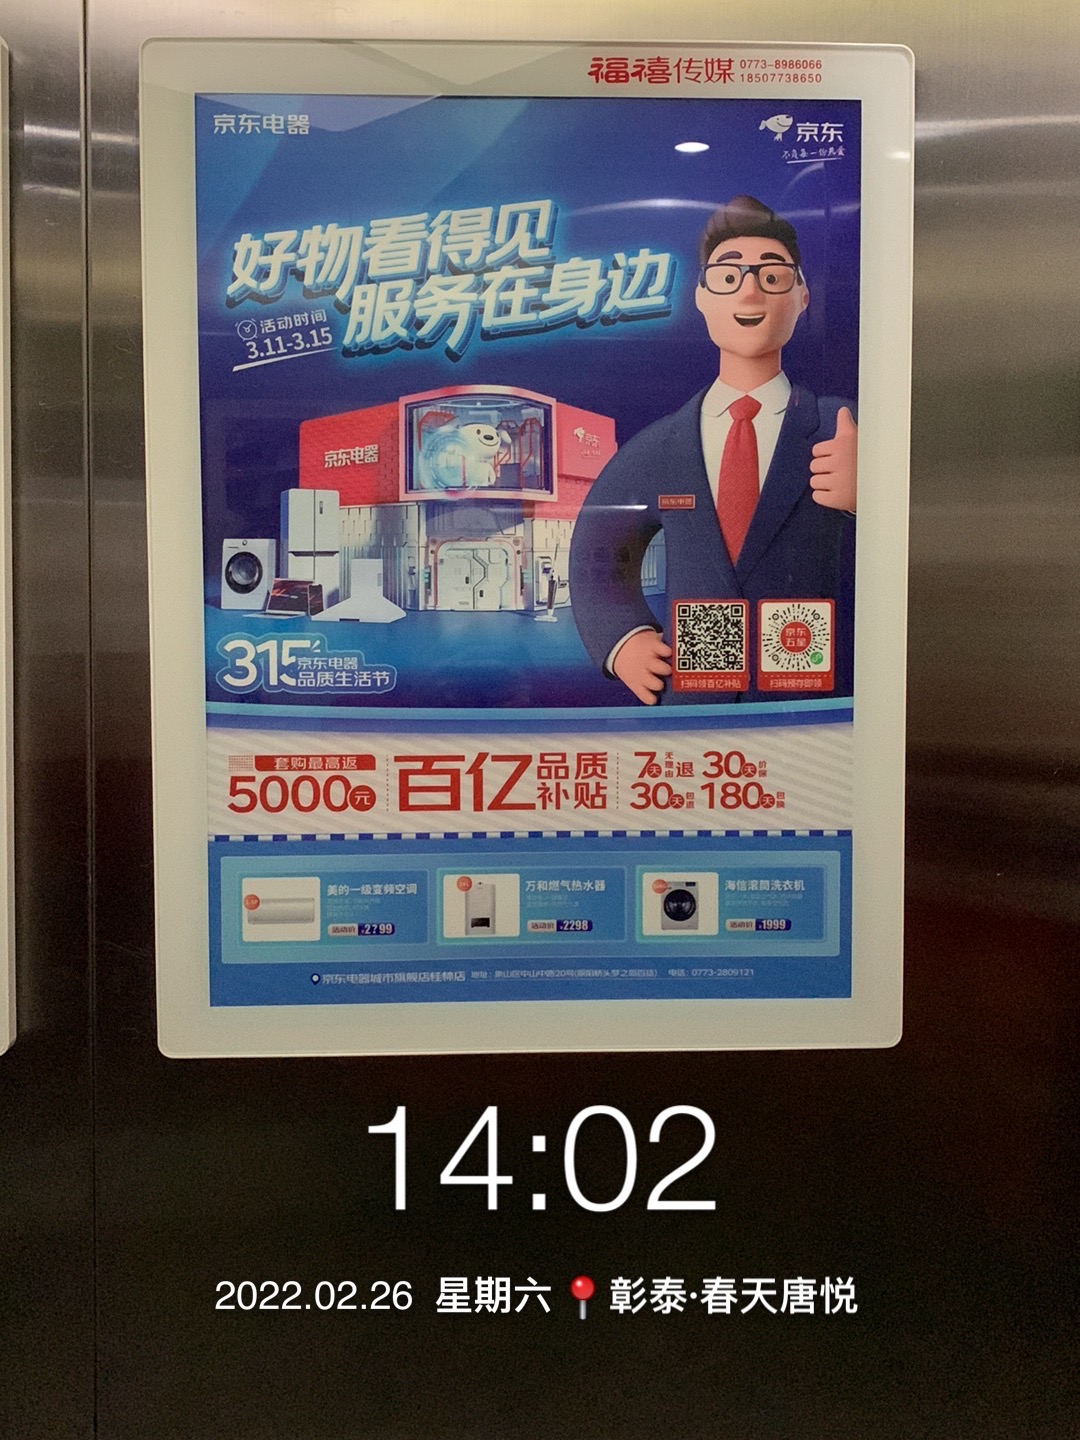 广西桂林彰泰第六园社区梯内媒体电梯海报